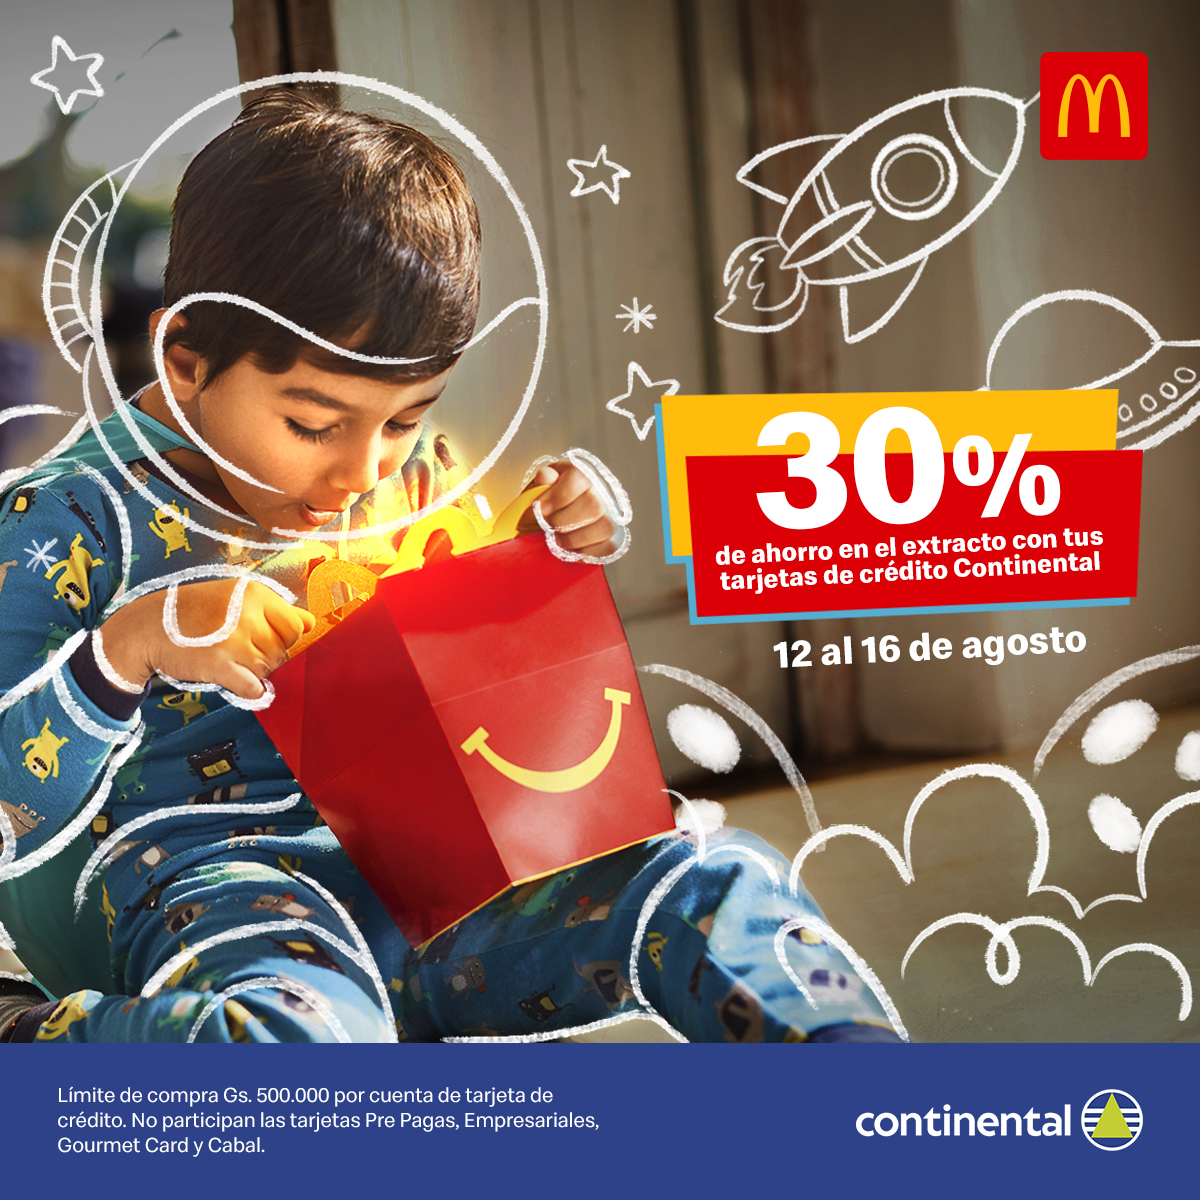 📣¡Atención McLovers! Del 12 al 16 de agosto tenés 30% ahorro en McDonald's pagando con tus tarjetas de crédito de @bcontinentalpy, para celebrar la semana del niño. 🥳🎉